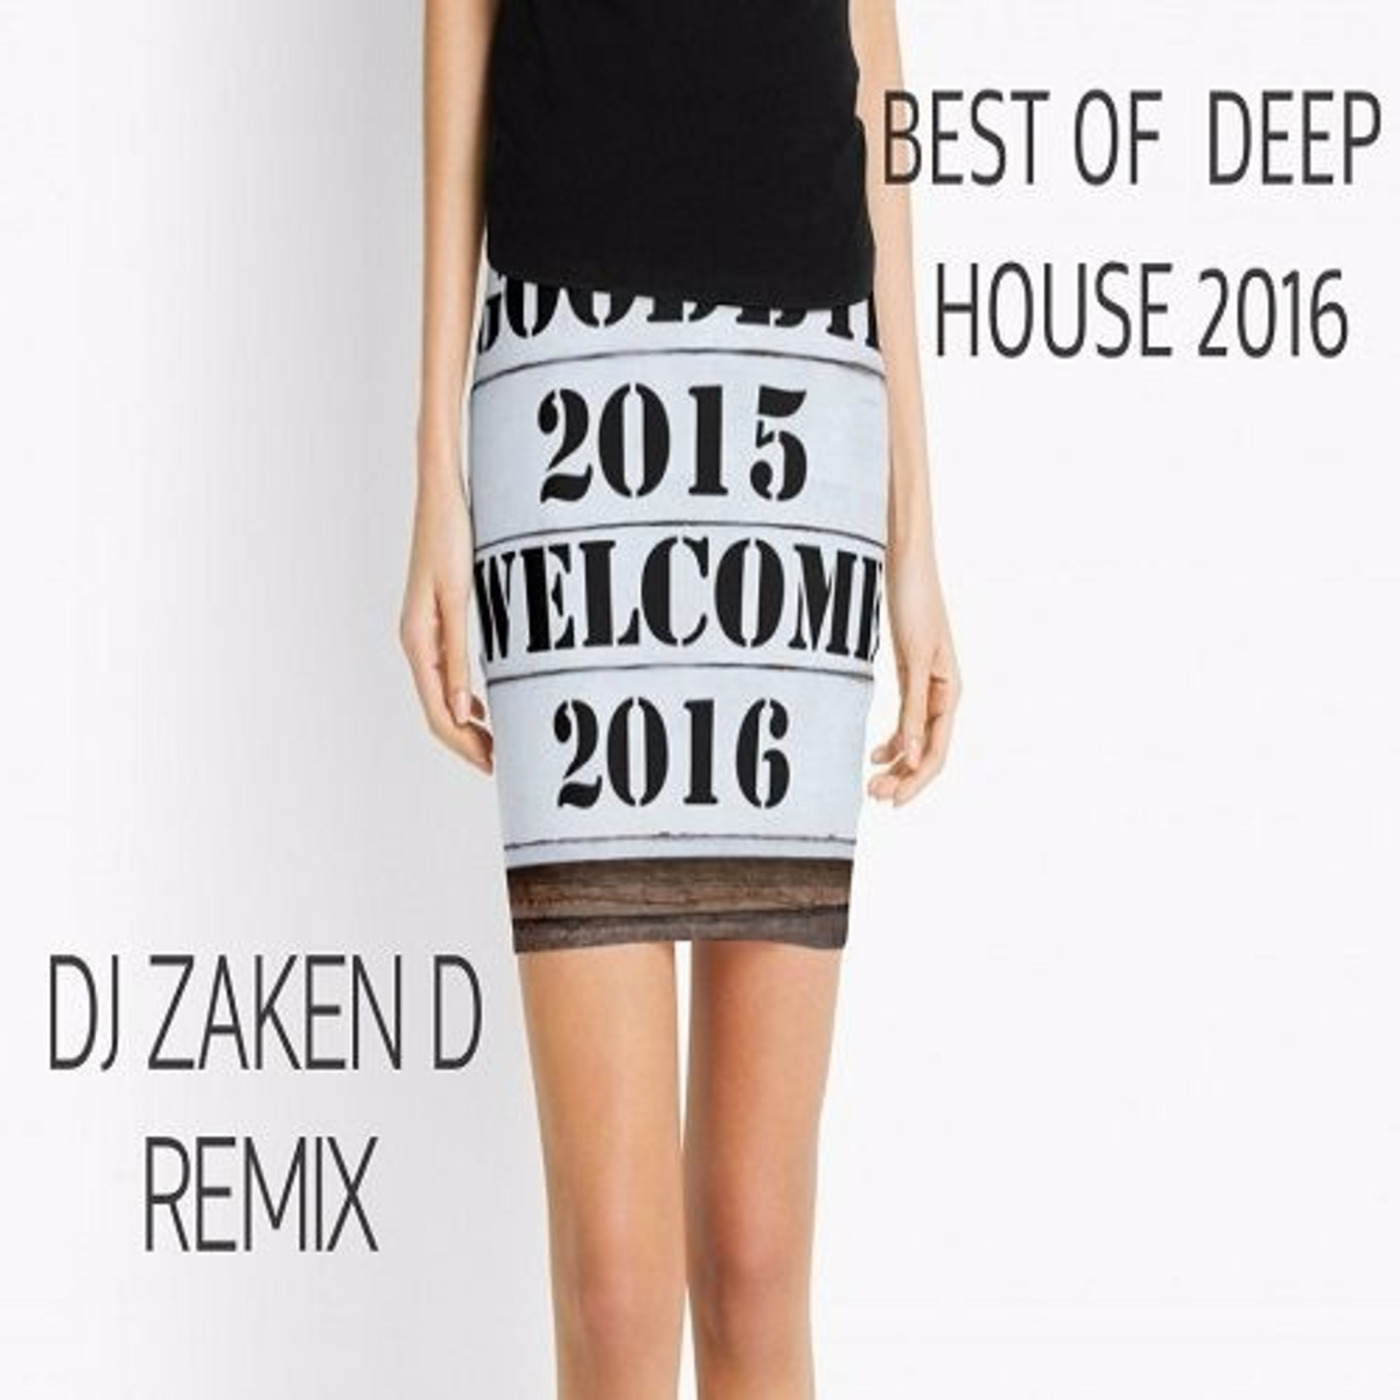 BEST OF DEEP HOUSE 2016 MIX DJ ZAKEN D